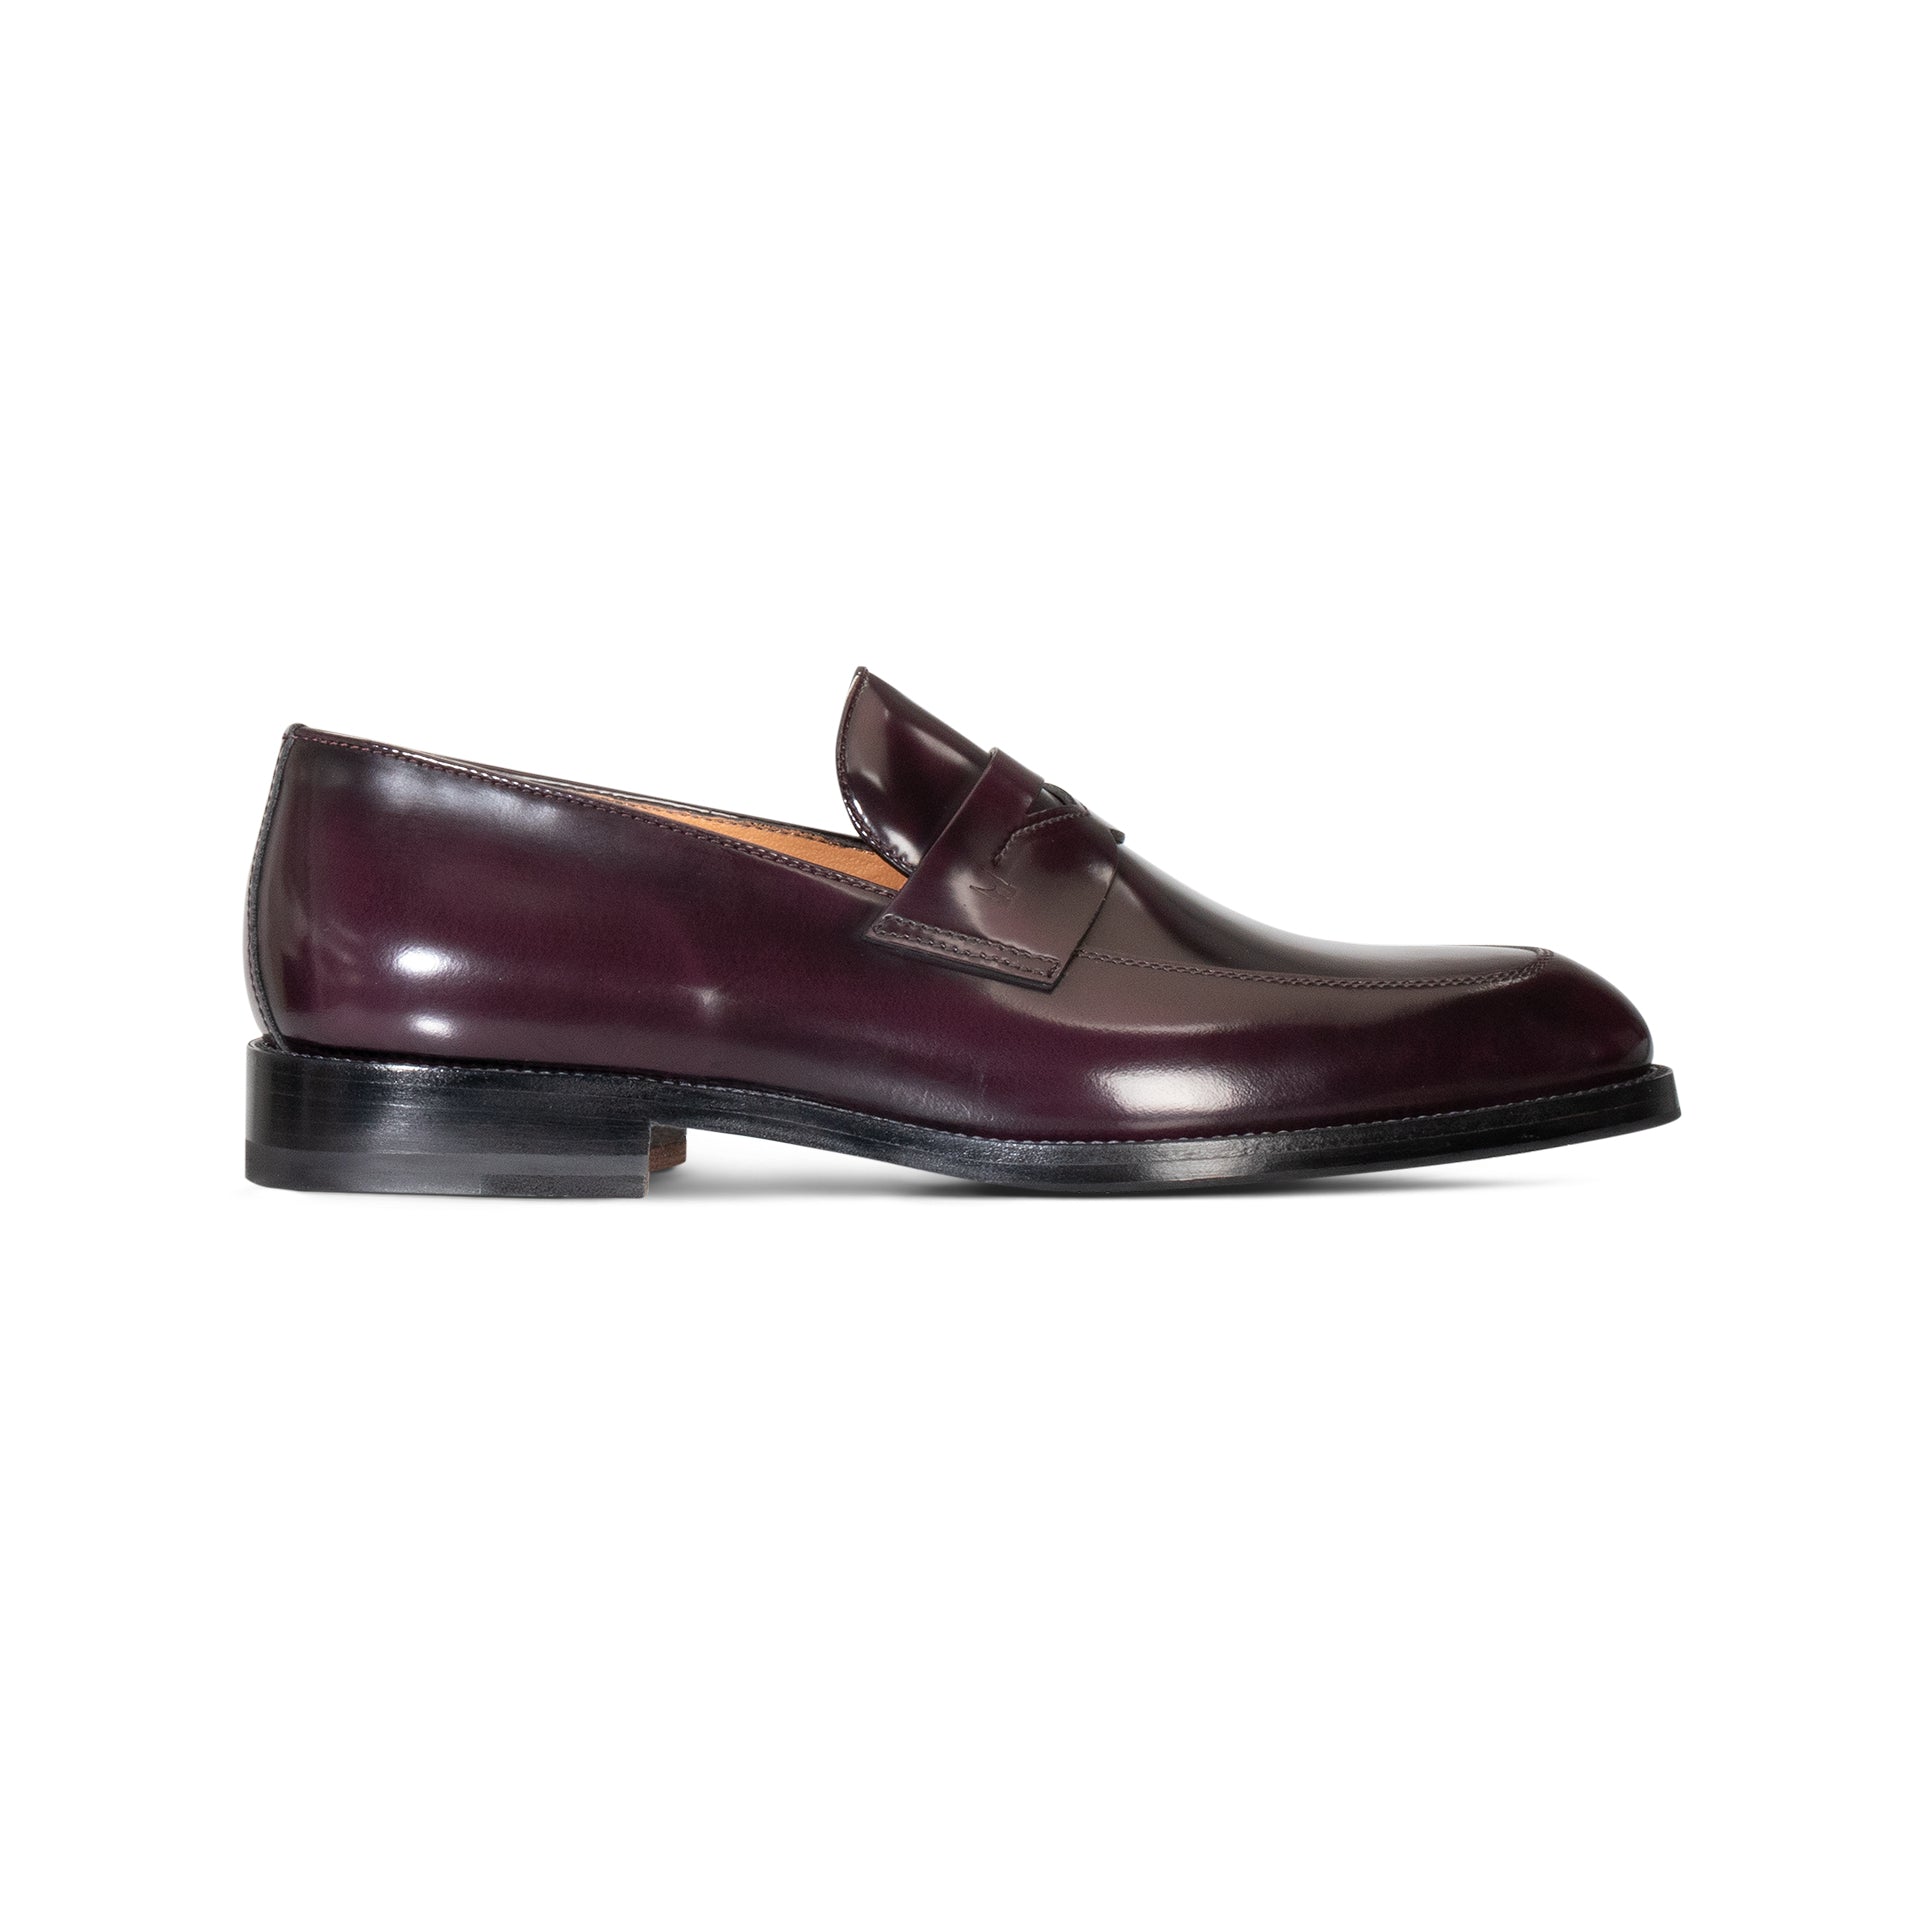 Burgundy leather Loafer – Moreschi